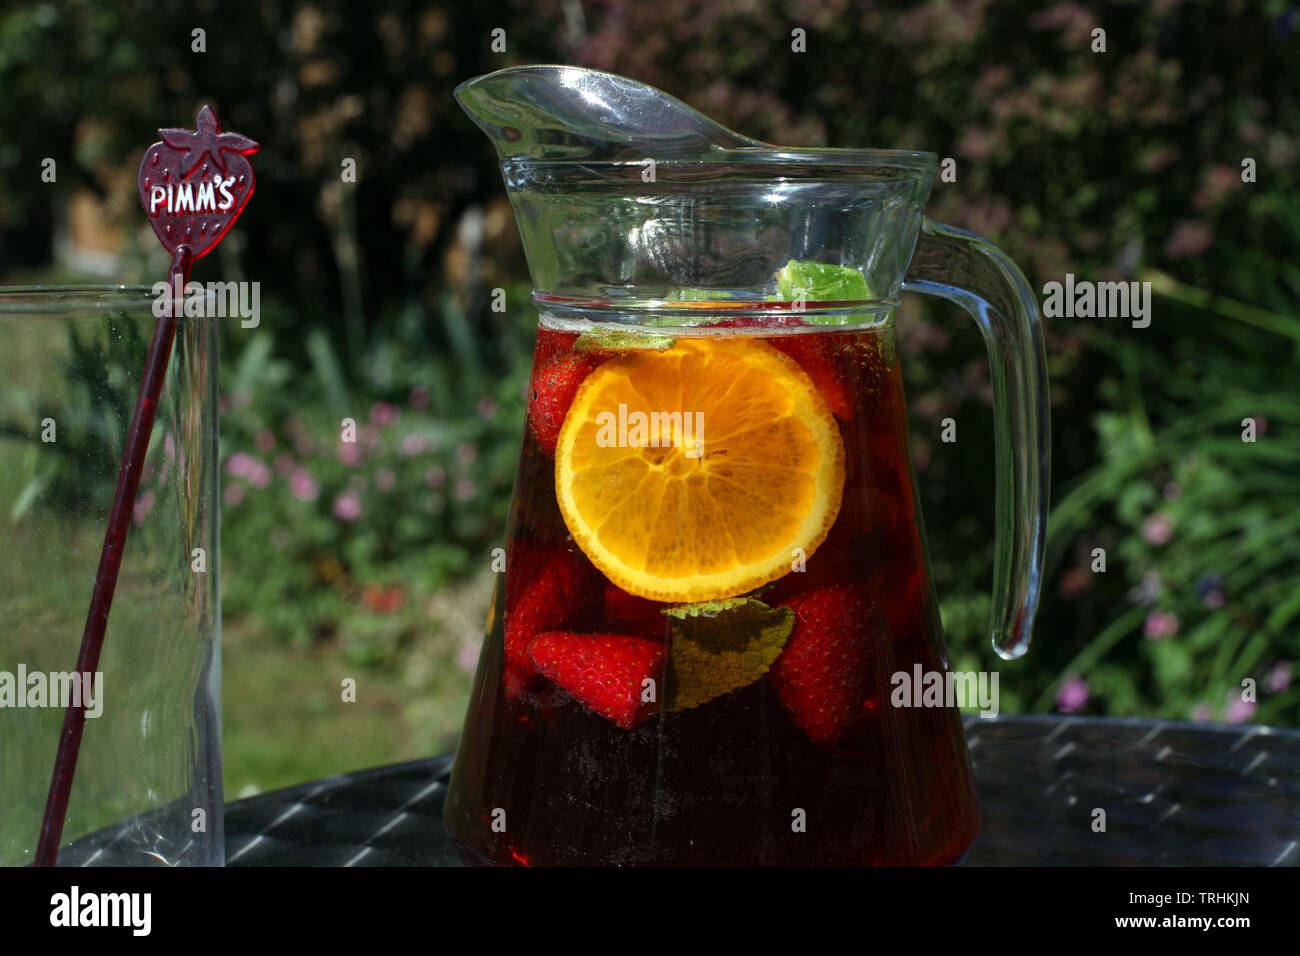 Pichet de limonade en extérieur et Pimms sunshine avec verre vide Banque D'Images